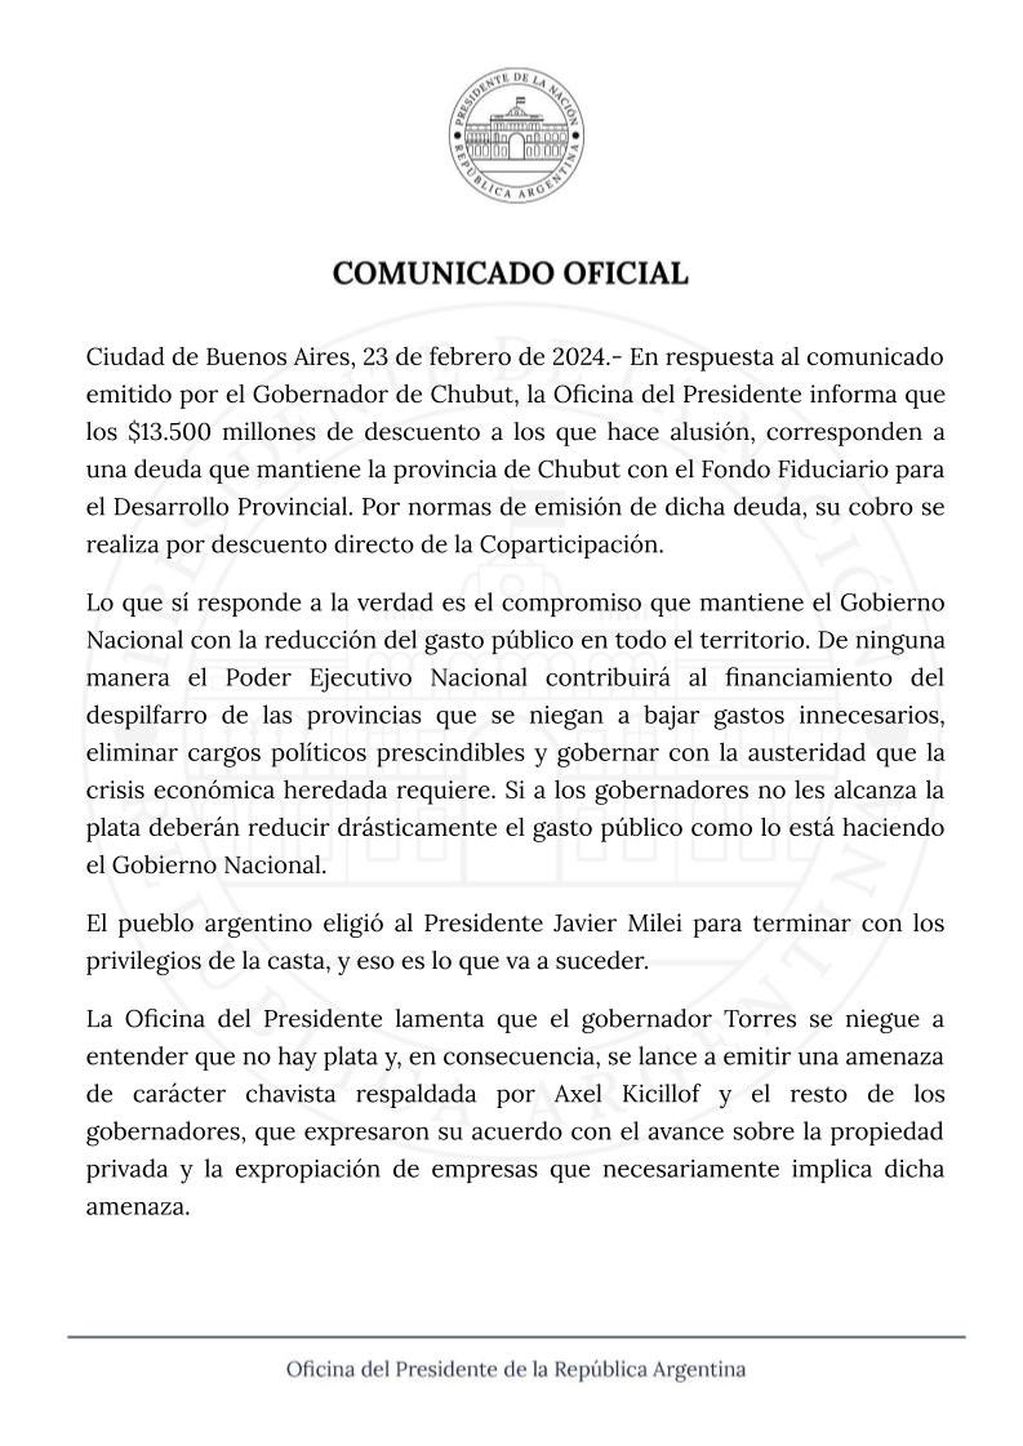 El durísimo comunicado de Javier Milei contra el chubutense Ignacio Torres por el reclamo de los fondos coparticipables y la puja por el petróleo.